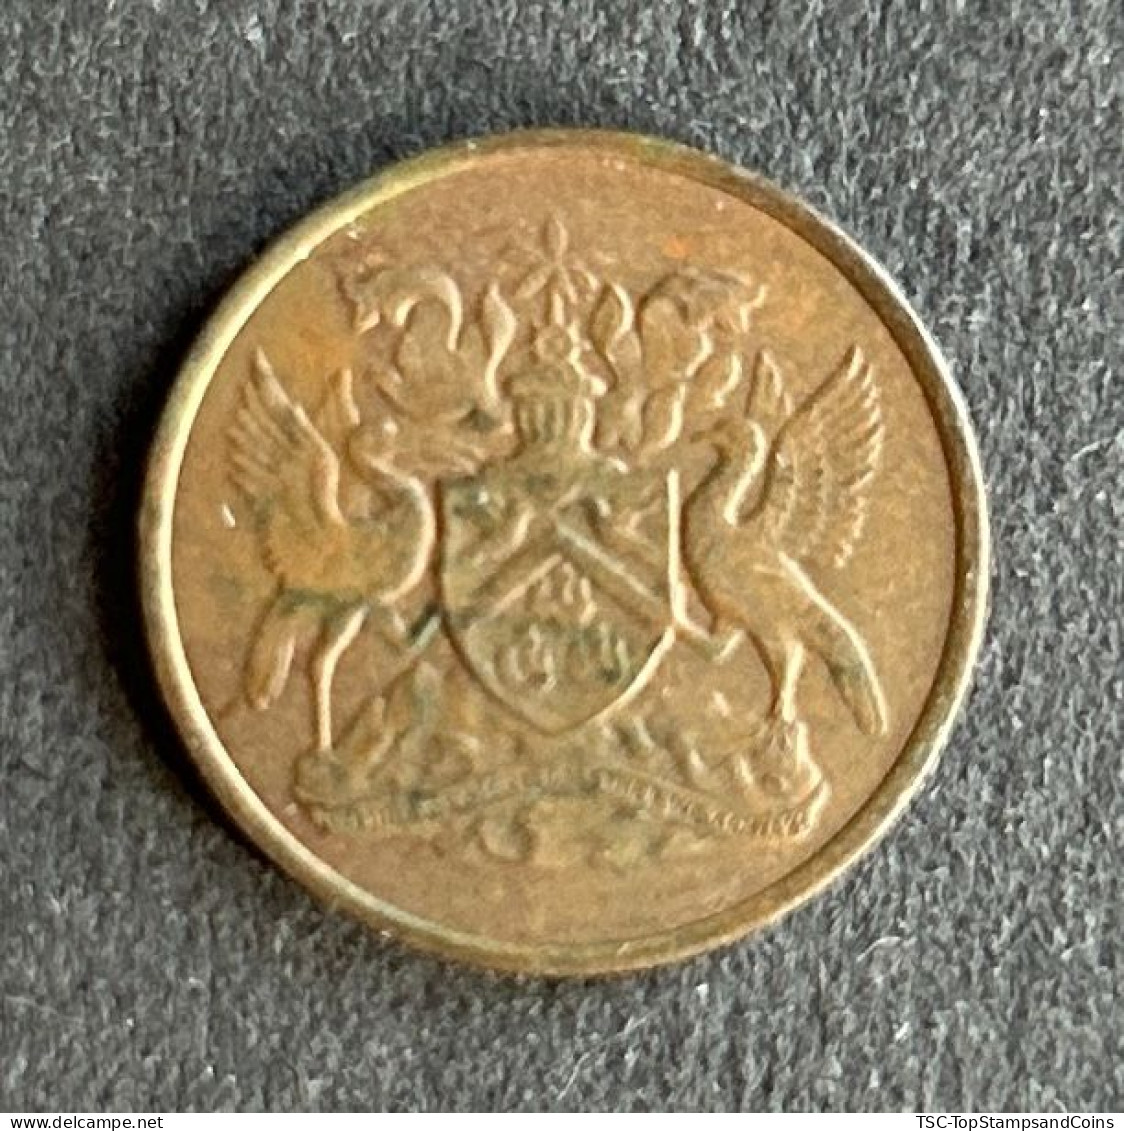 $$T&B400 - Elizabeth II - Coat Of Arms - 1 Cent Coin - Trinidad & Tobago - 1973 - Trinidad Y Tobago